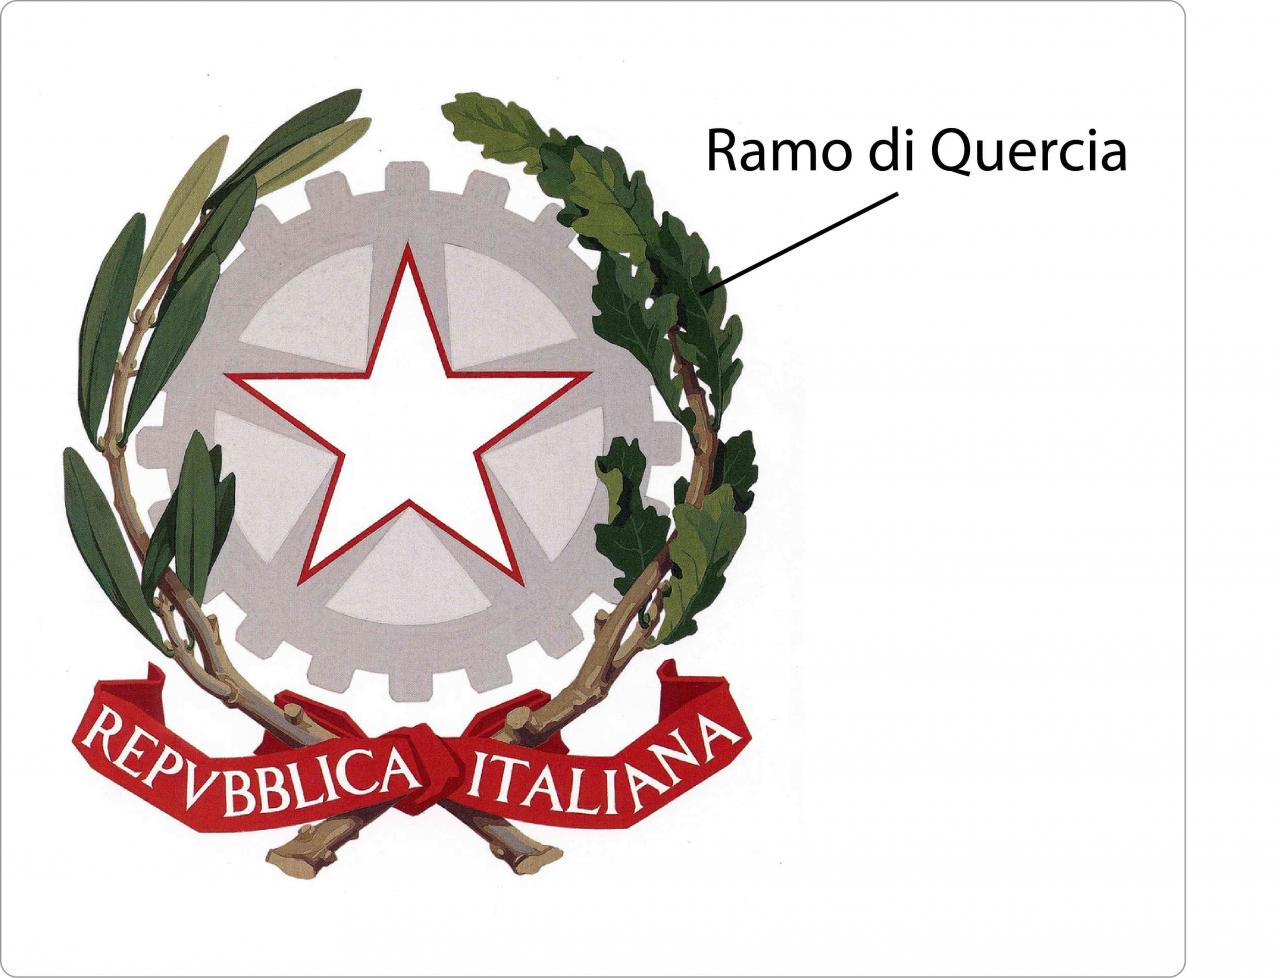 Ramo di quercia emblema della forza del popolo italiano